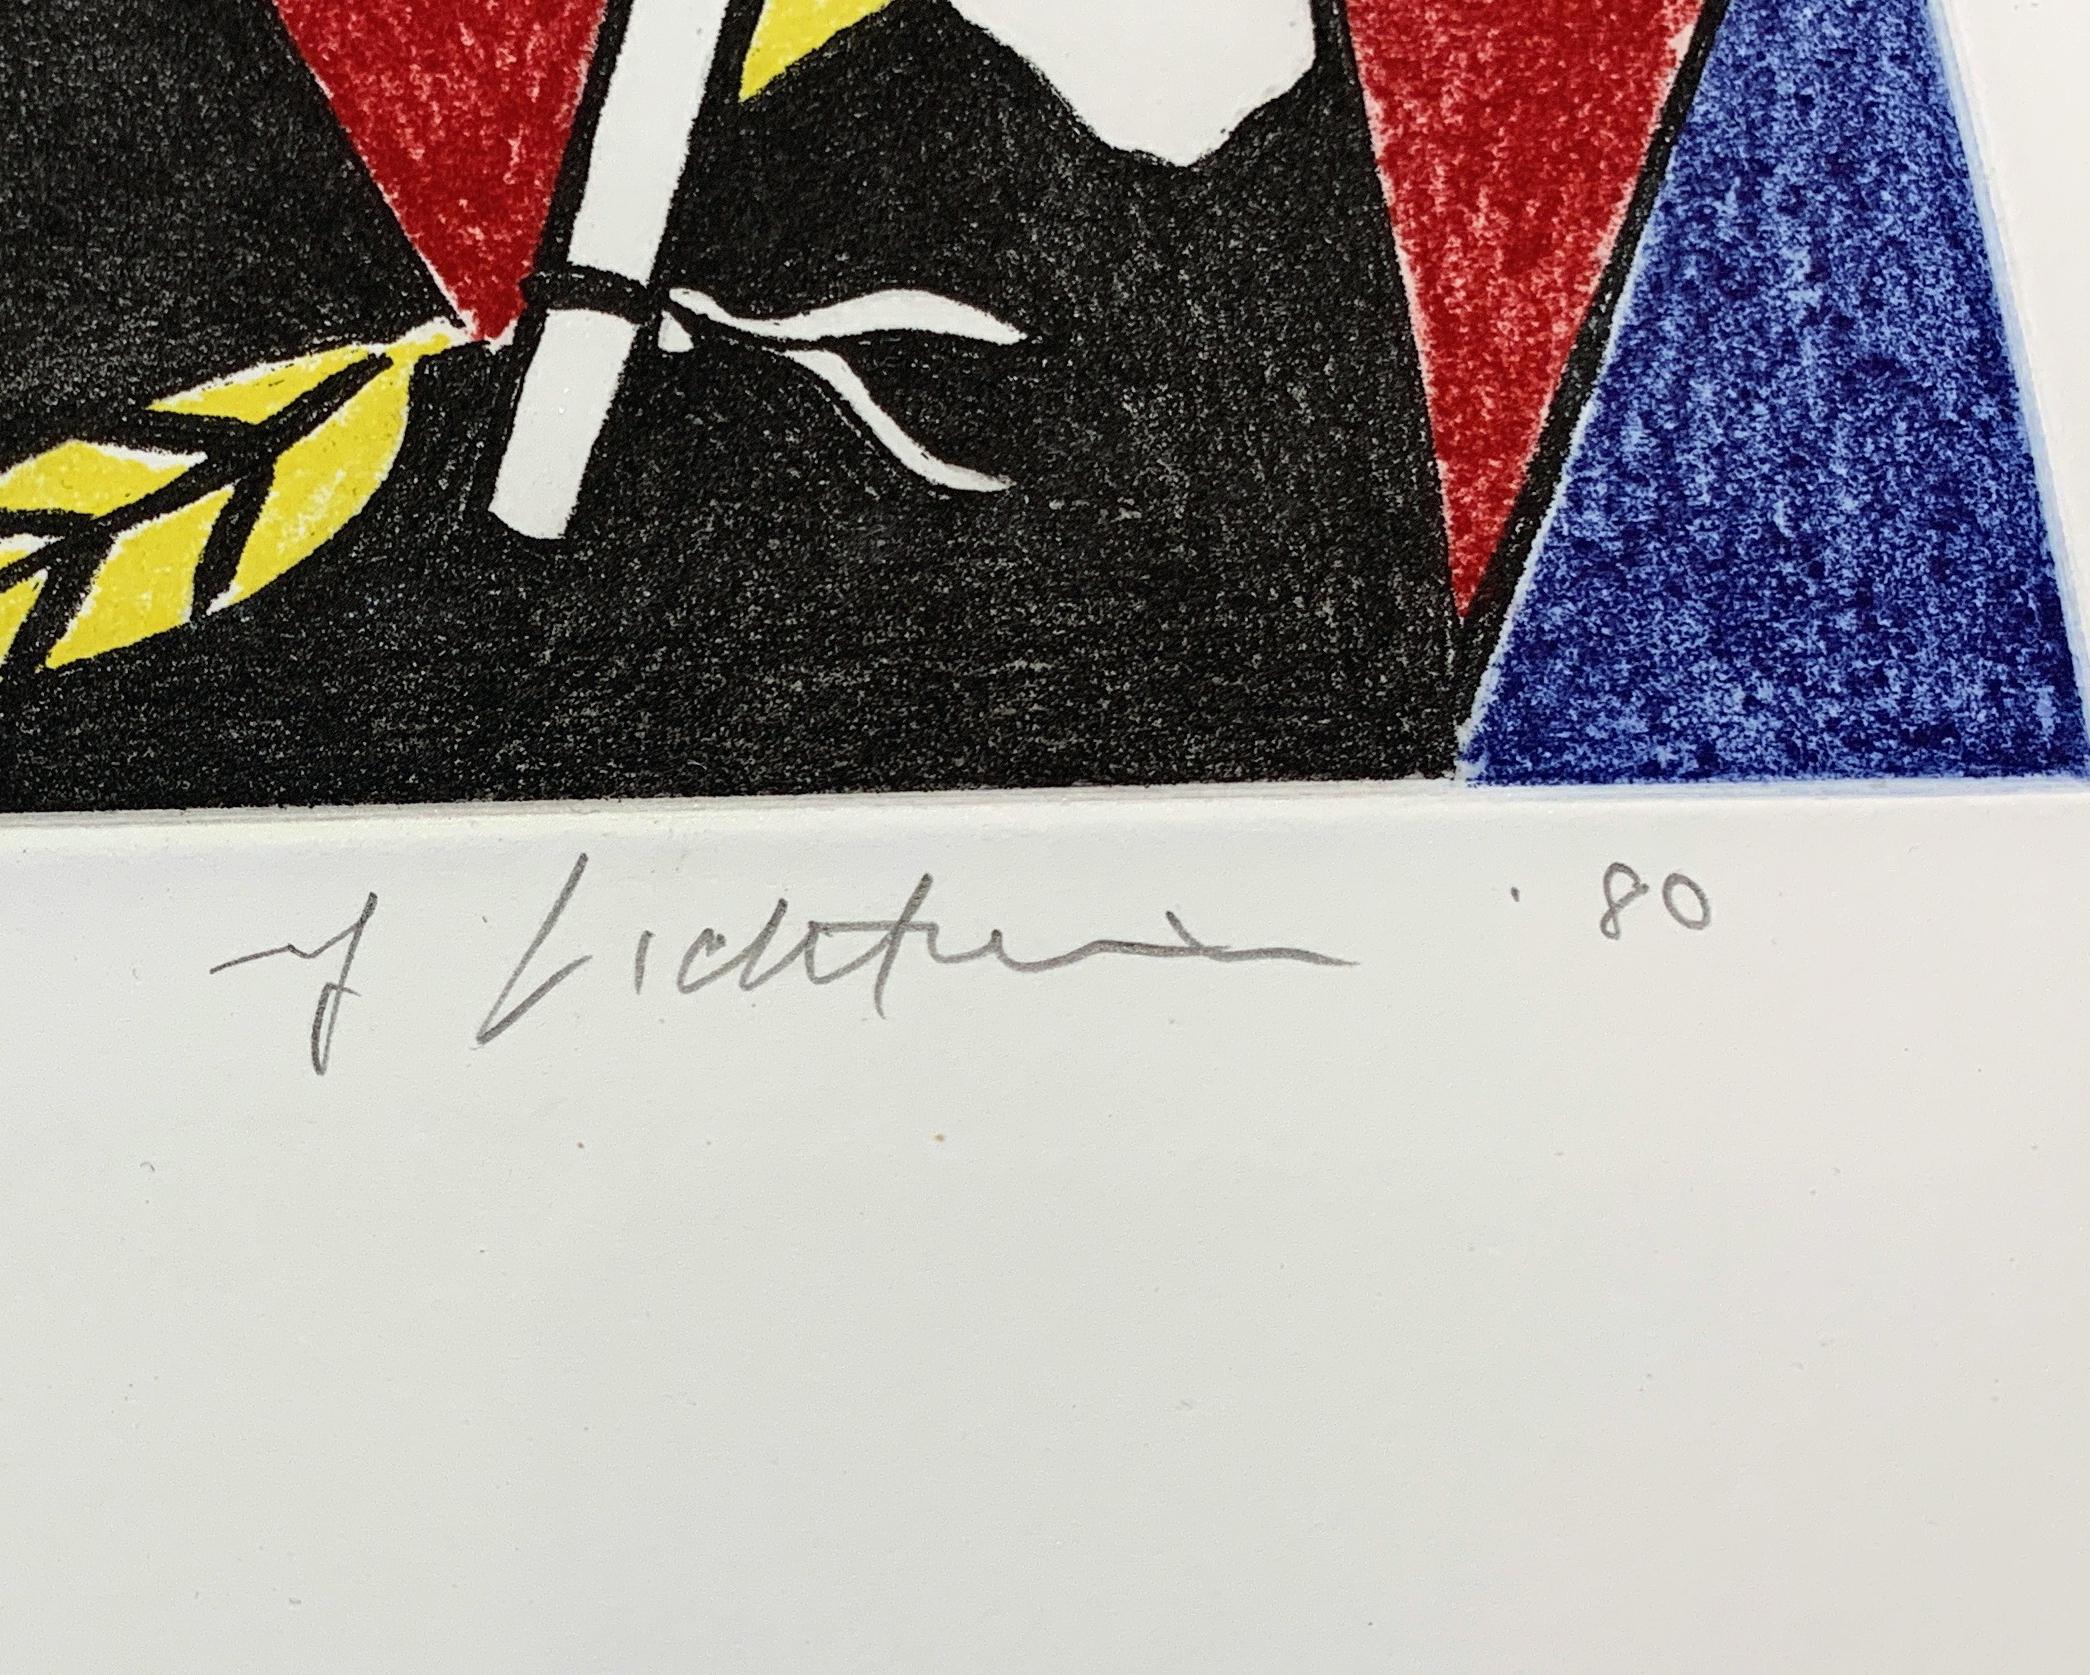 Roy Lichtenstein
Unbetitelt I, 1980
Radierung mit weichem Grund auf Lana-Büttenpapier
23 x 20 5/8 Zoll
Auflage von 8
Signiert und datiert vom Künstler unten rechts 
Ungerahmt
